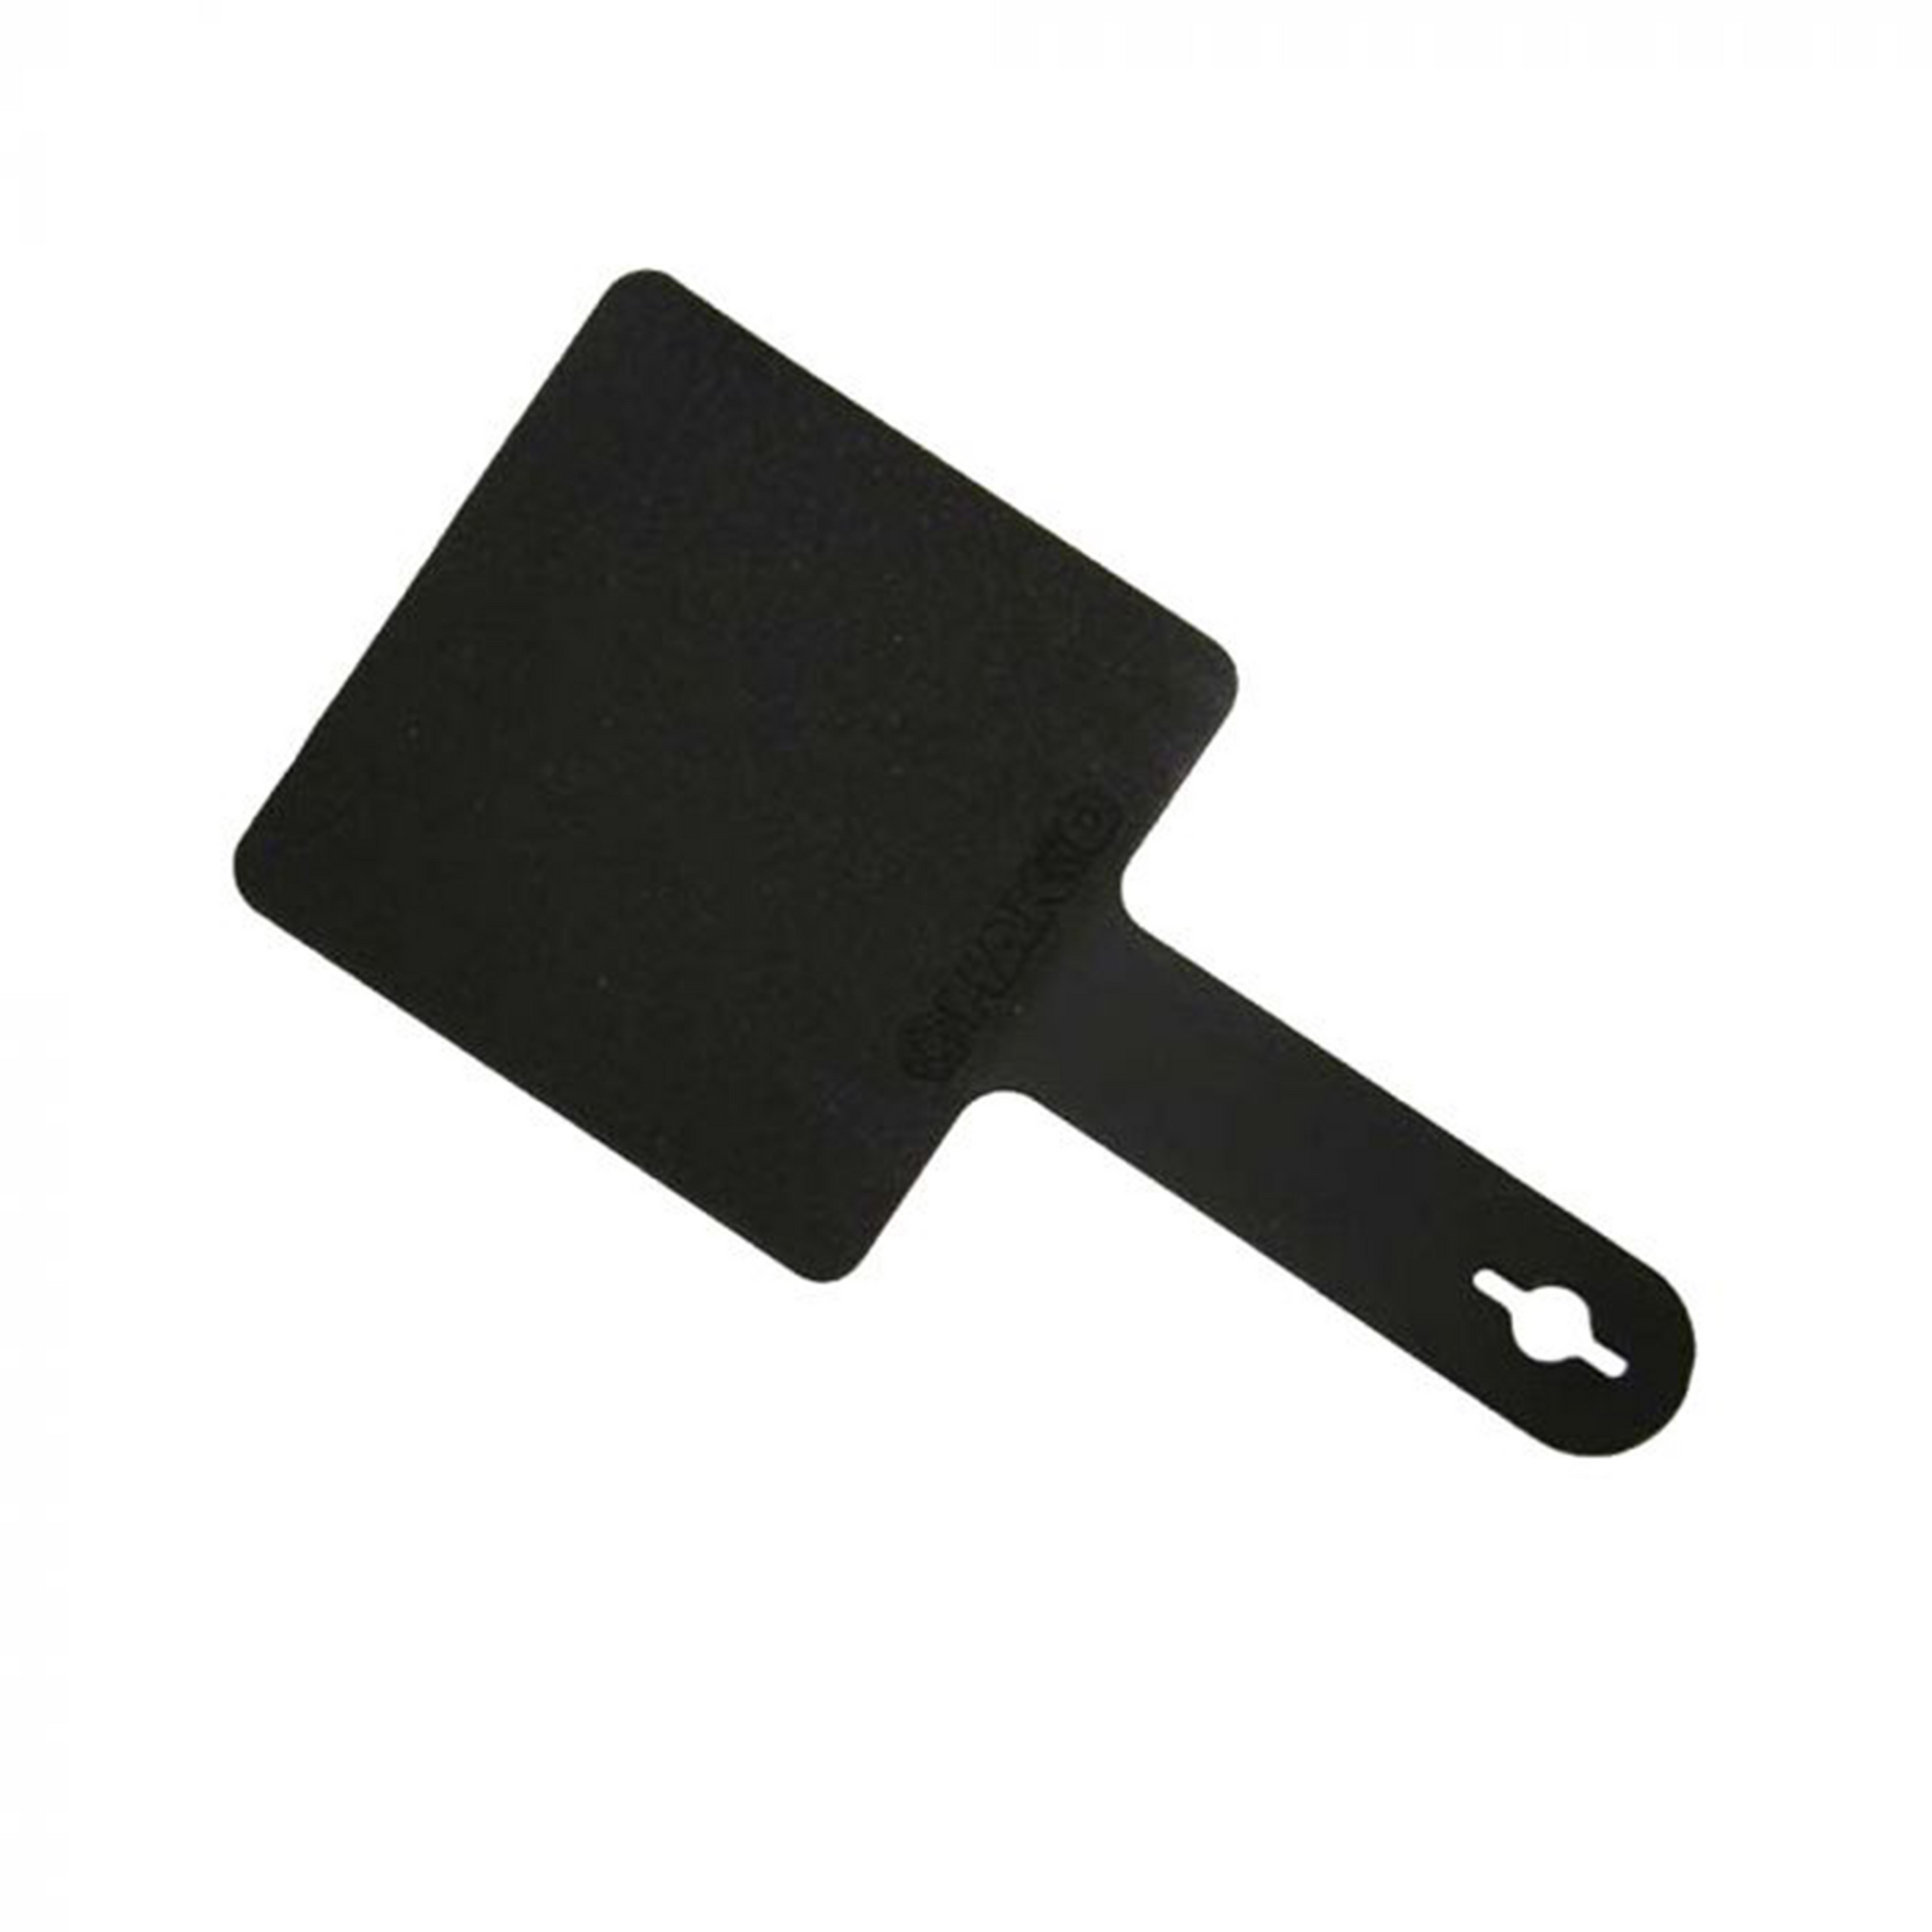 Hakko_ B2300 Heat Resistant Pad_ Soldering Accessories_ Hakko Products